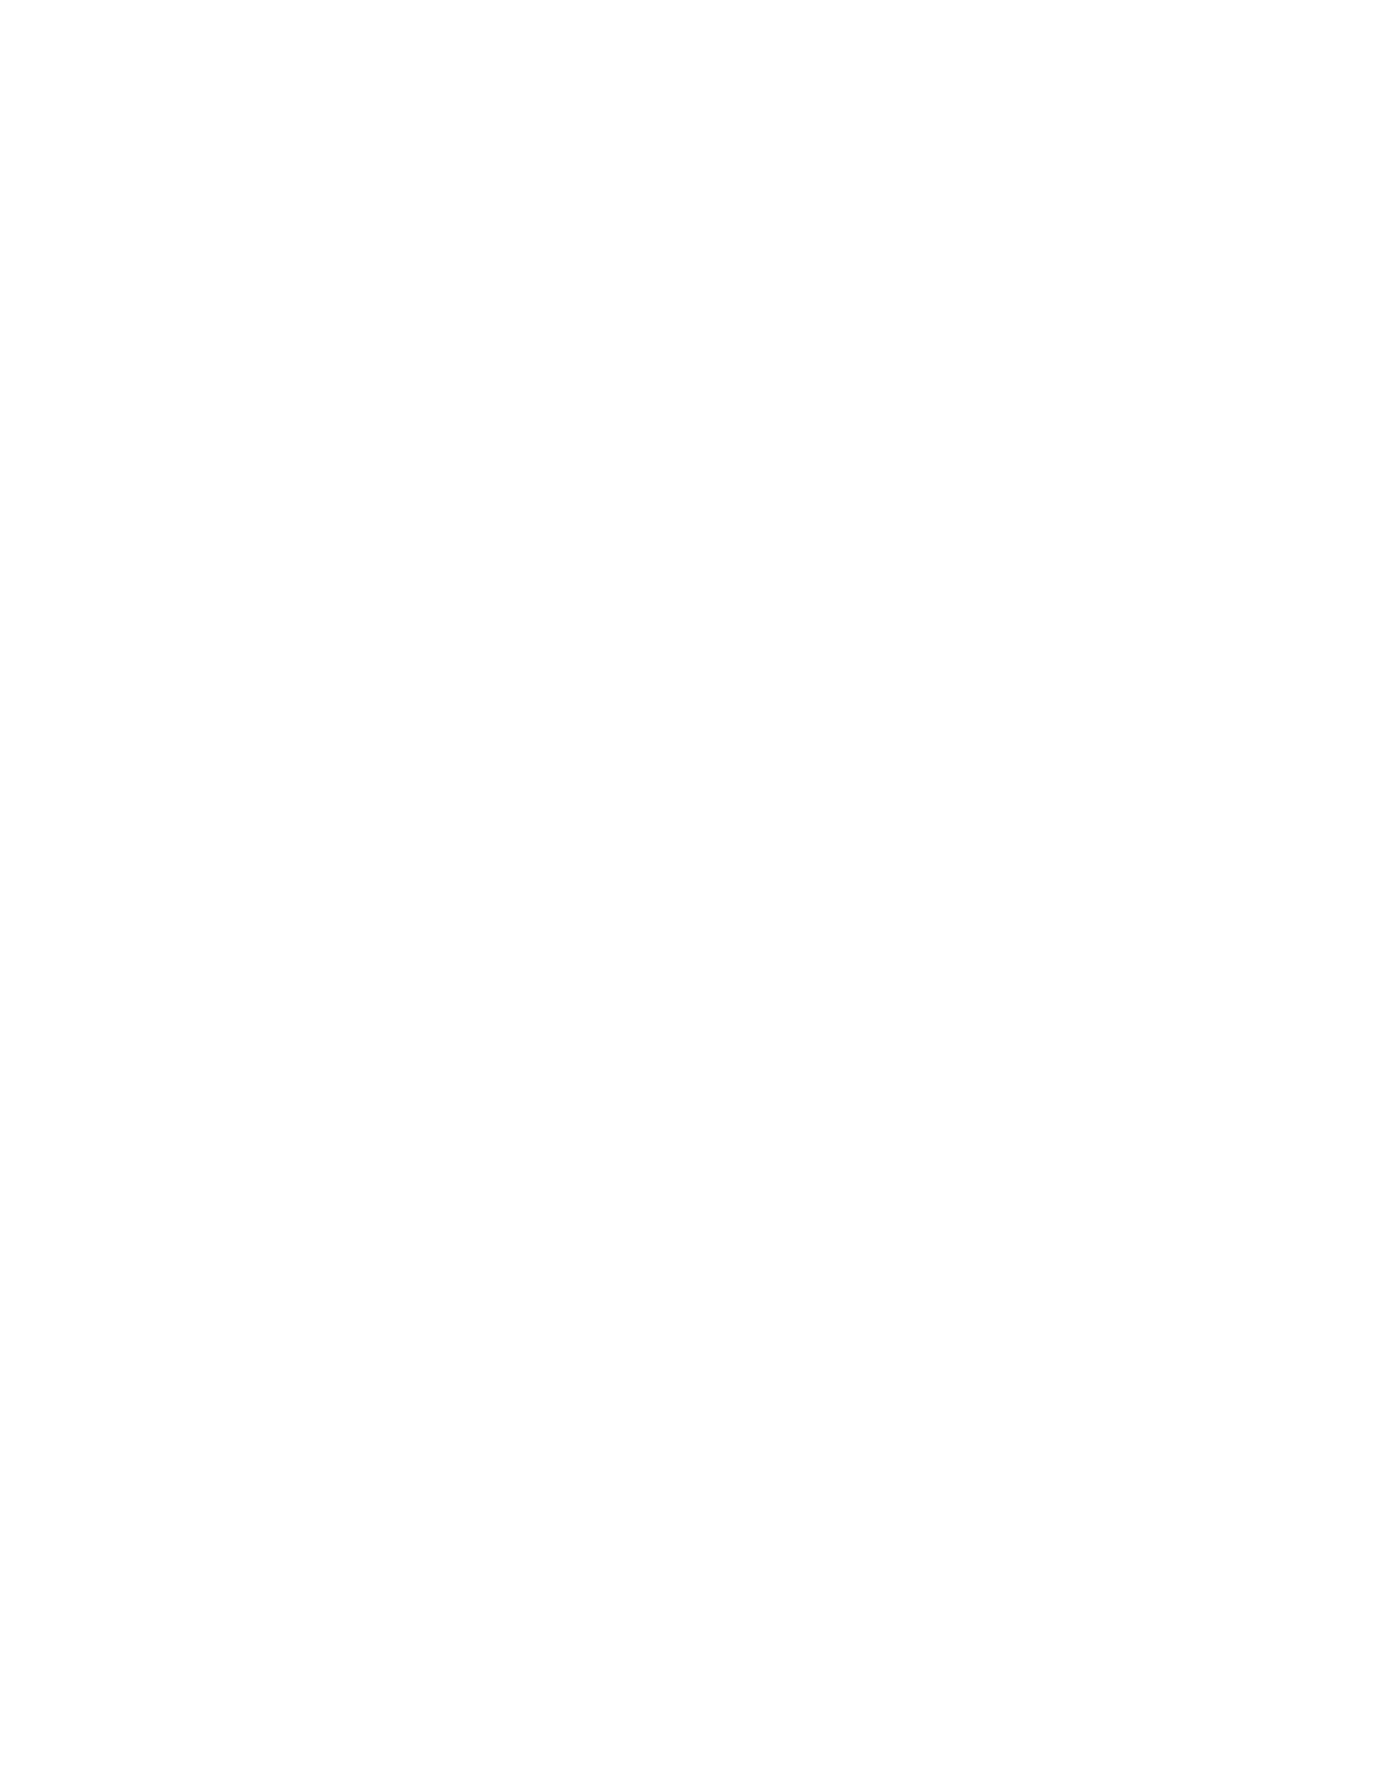 Dan Gregson